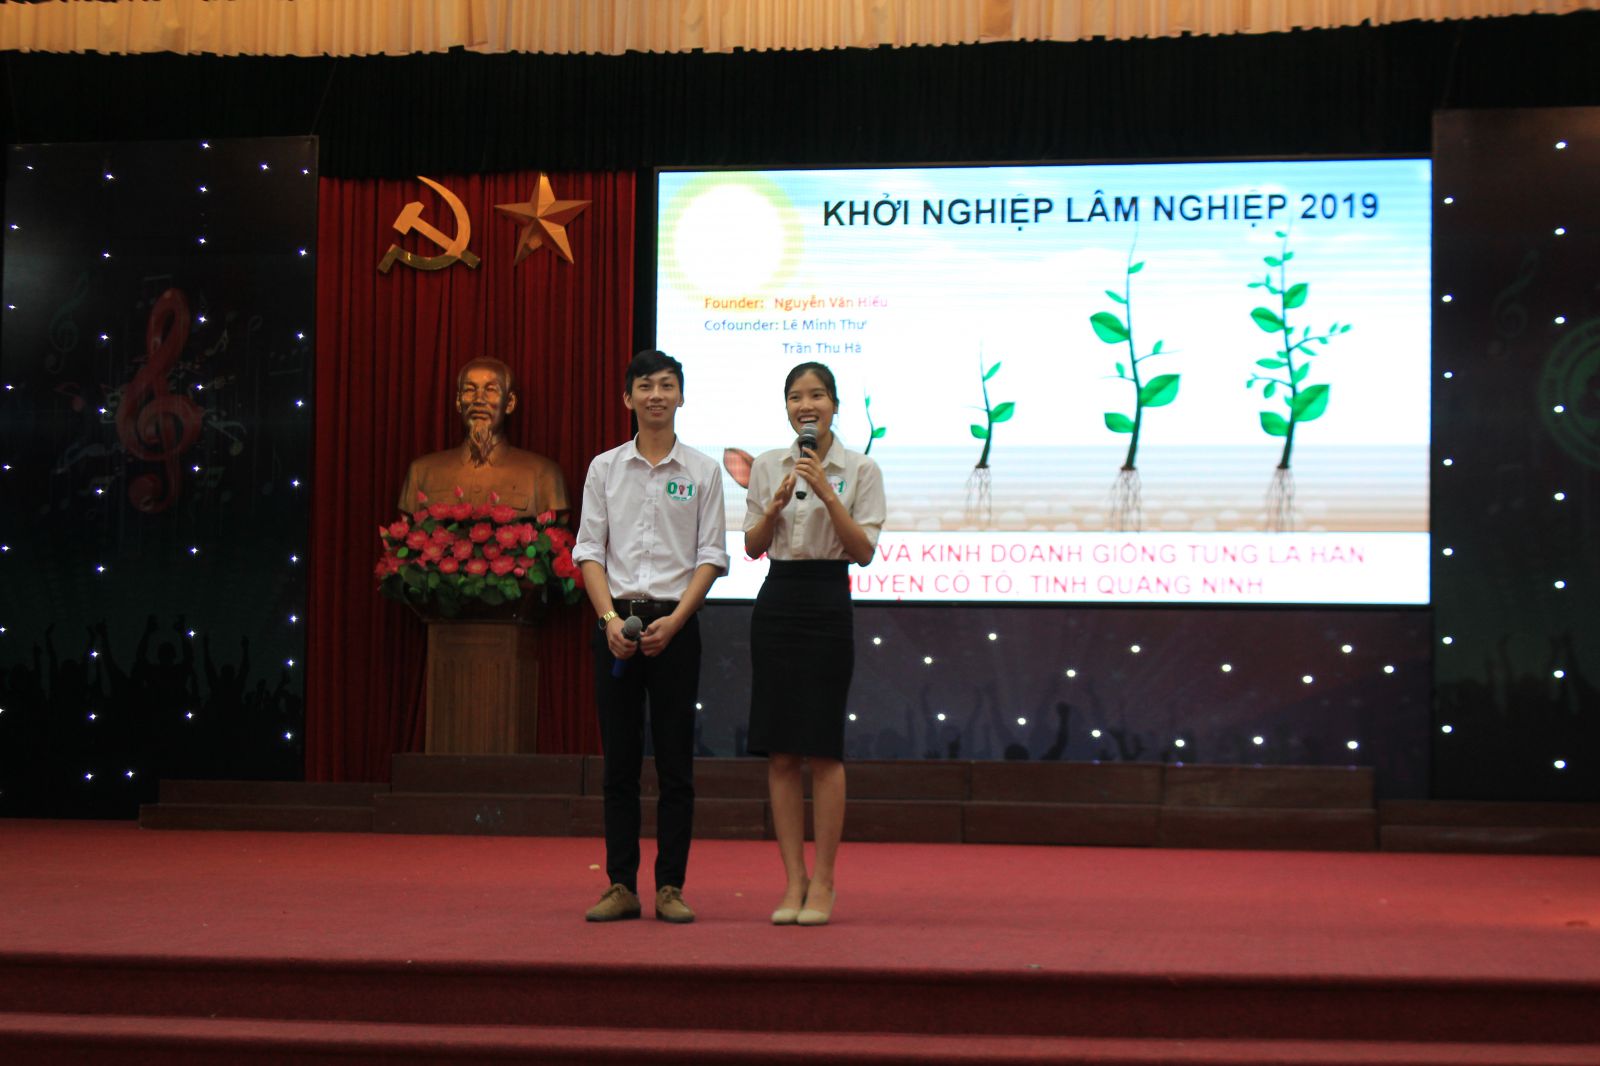 Dự án “Sản xuất và kinh doanh giống Tùng La Hán huyện Cô Tô, tỉnh Quảng Ninh”